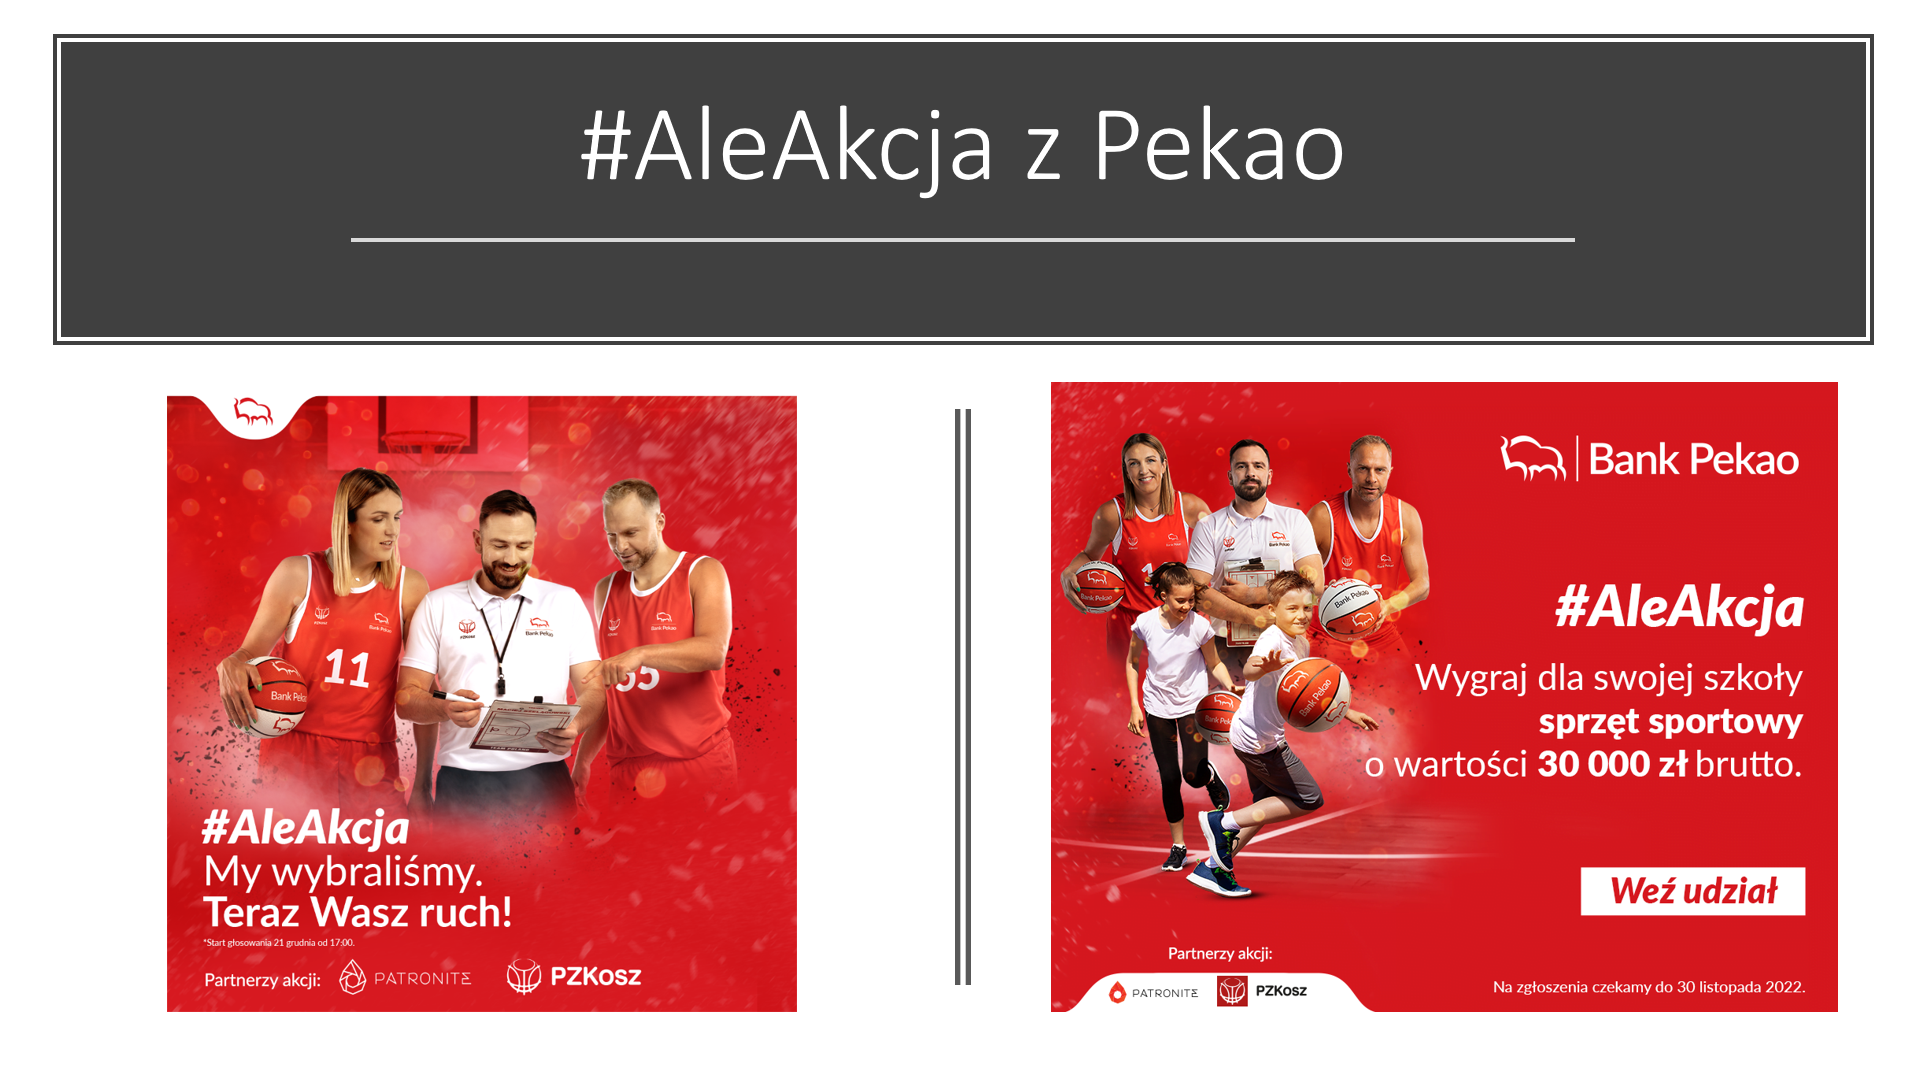 Na czerwonym tle obrazka widać osoby- koszykarzy, którzy zachęcają do udziału szkół w akcji z bankiem Pekao #AleAkcja. Na obarzku sa również napis z kwotą 30000 na nagrody- sprzęt sportowy.